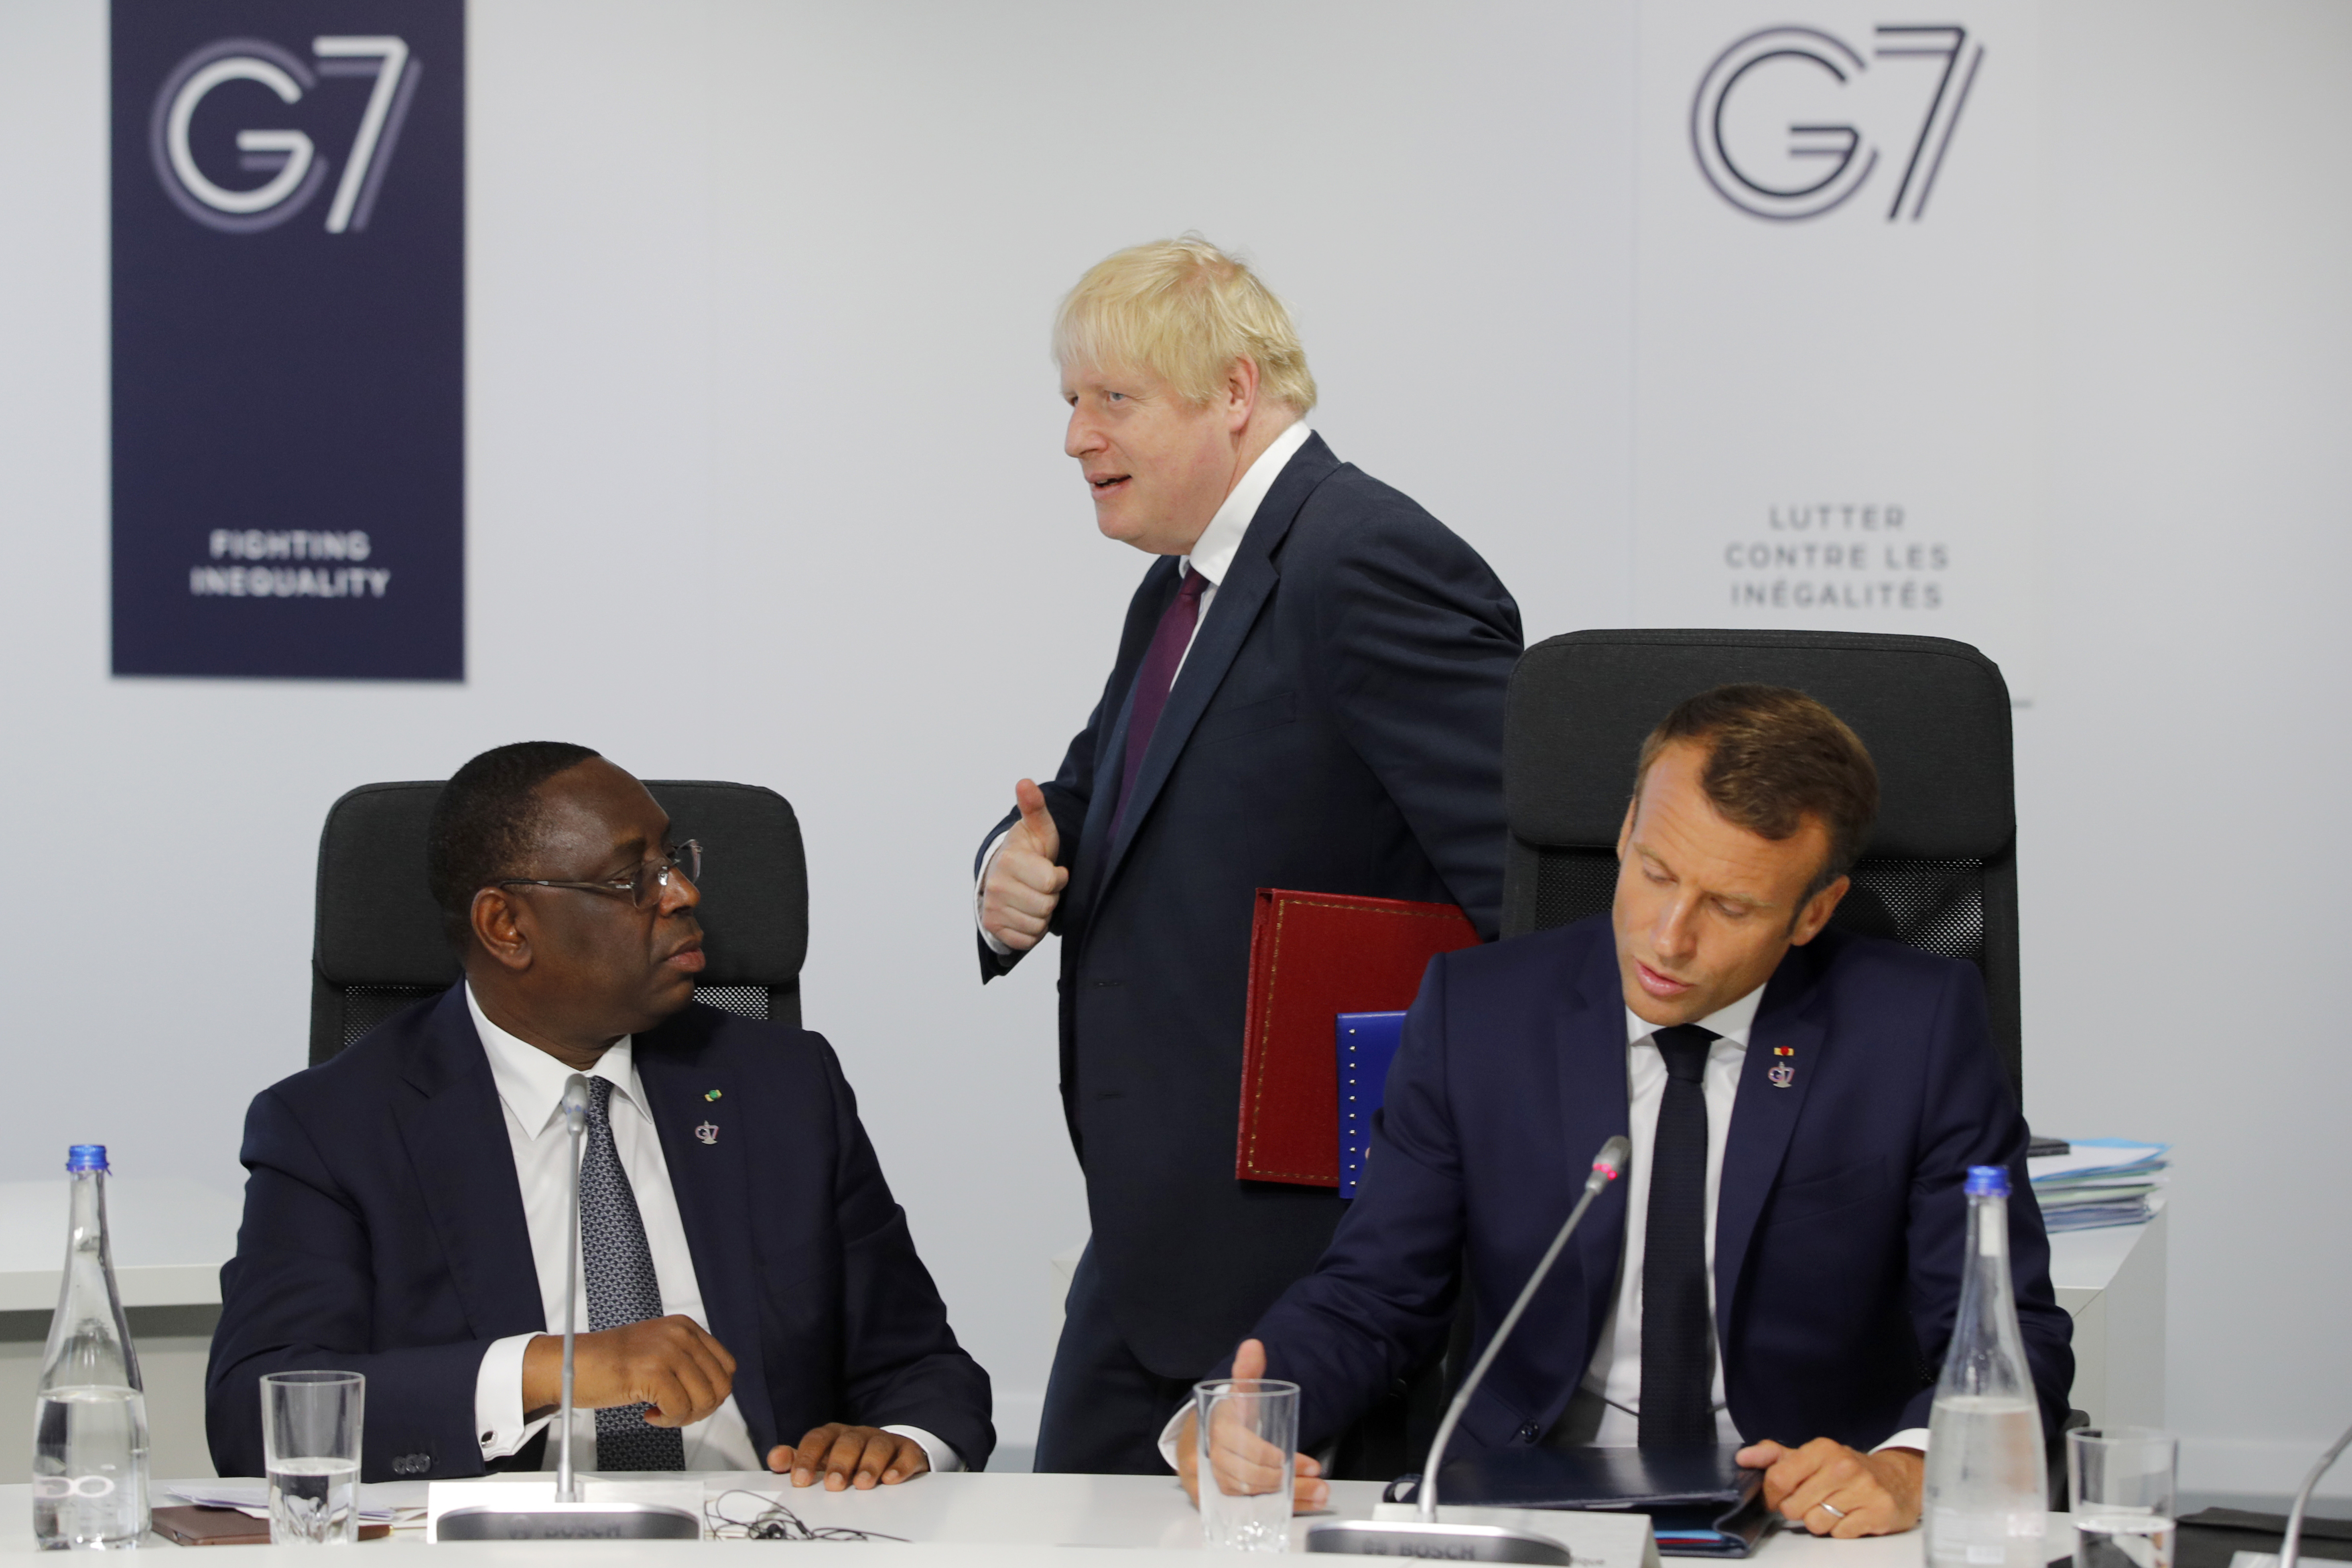 a snímke britský premiér Boris Johnson prechádza okolo francúzskeho prezidenta Emmanuela Macrona (vpravo) a senegalského prezidenta Macky Sallu počas rokovania pracovnej skupiny G7 Partnership with Africa lídrov krajín G7 a predstaviteľov afrických krajín na summite lídrov krajín skupiny G7 v juhofrancúzskom Biarritzi 25. augusta 2019.